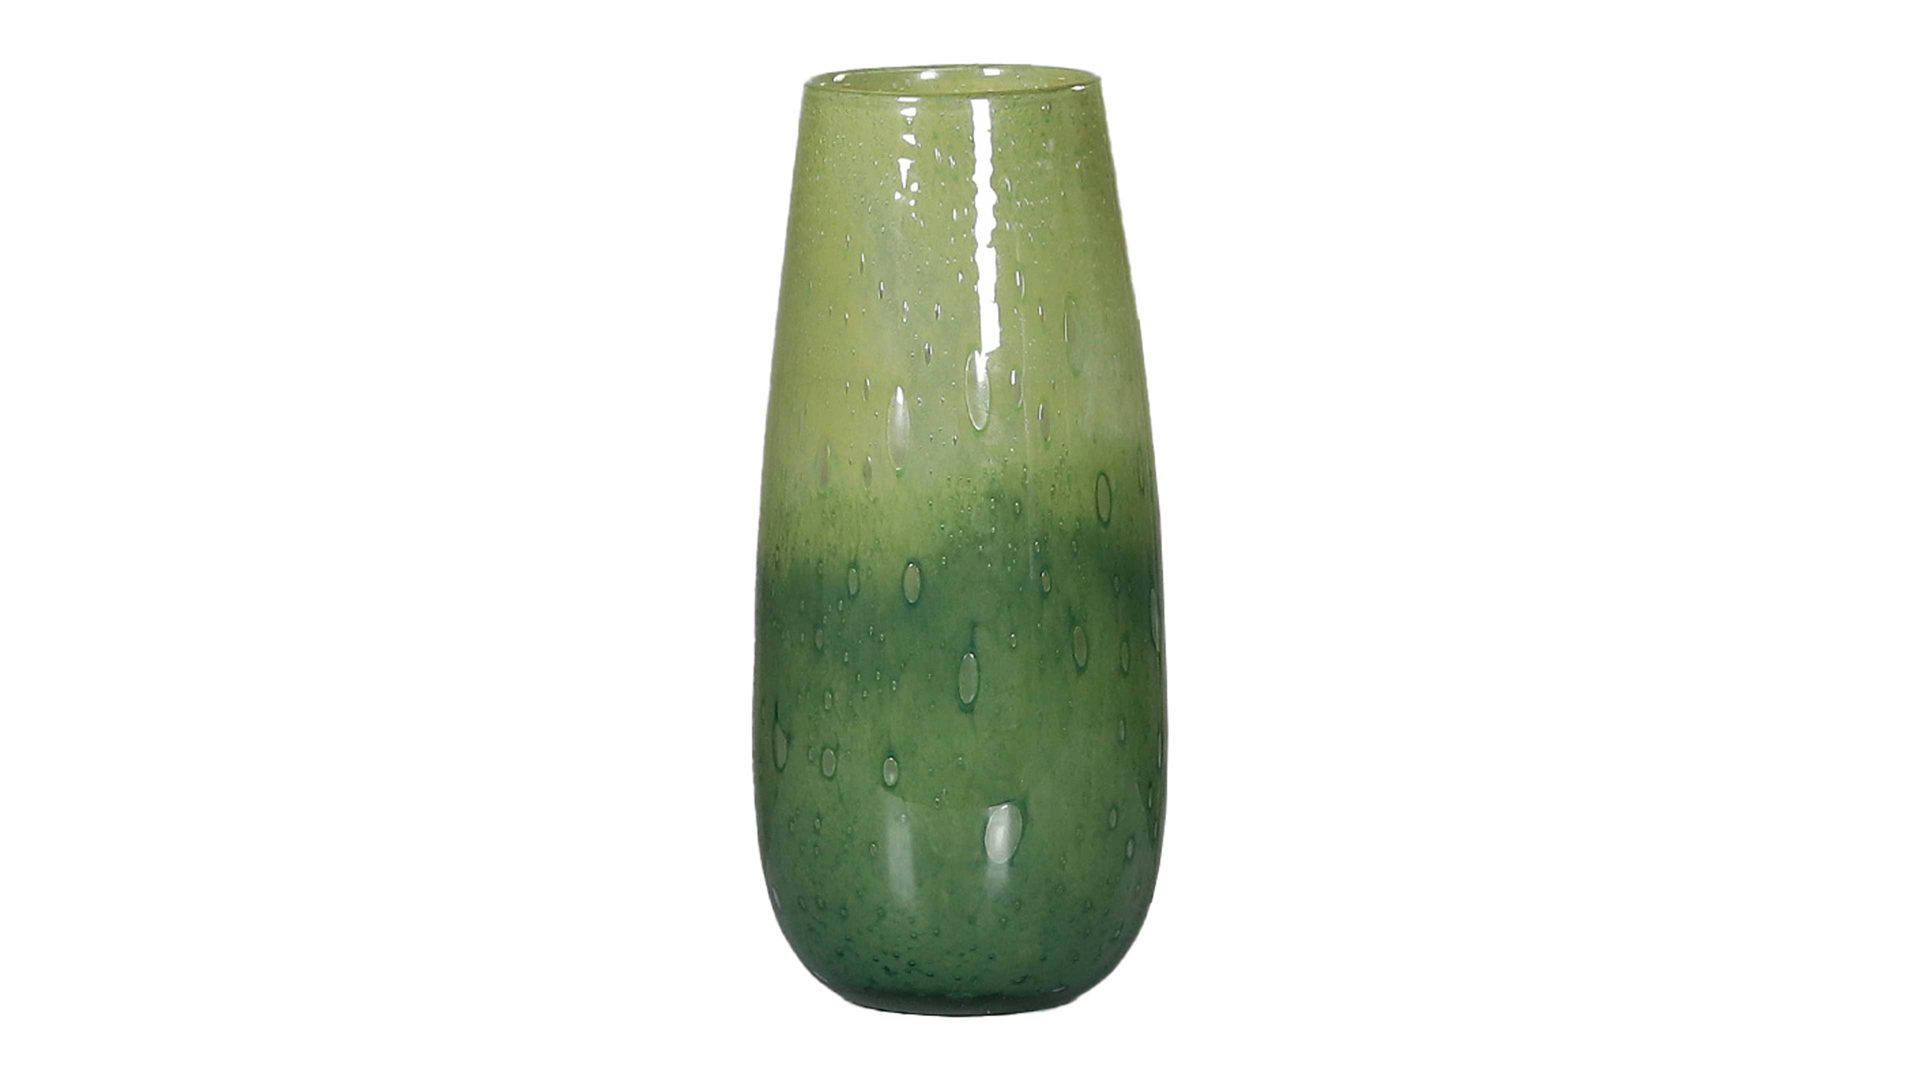 Vase Dpi aus Glas in Grün Blumenvase grünes Glas - Höhe ca. 27 cm